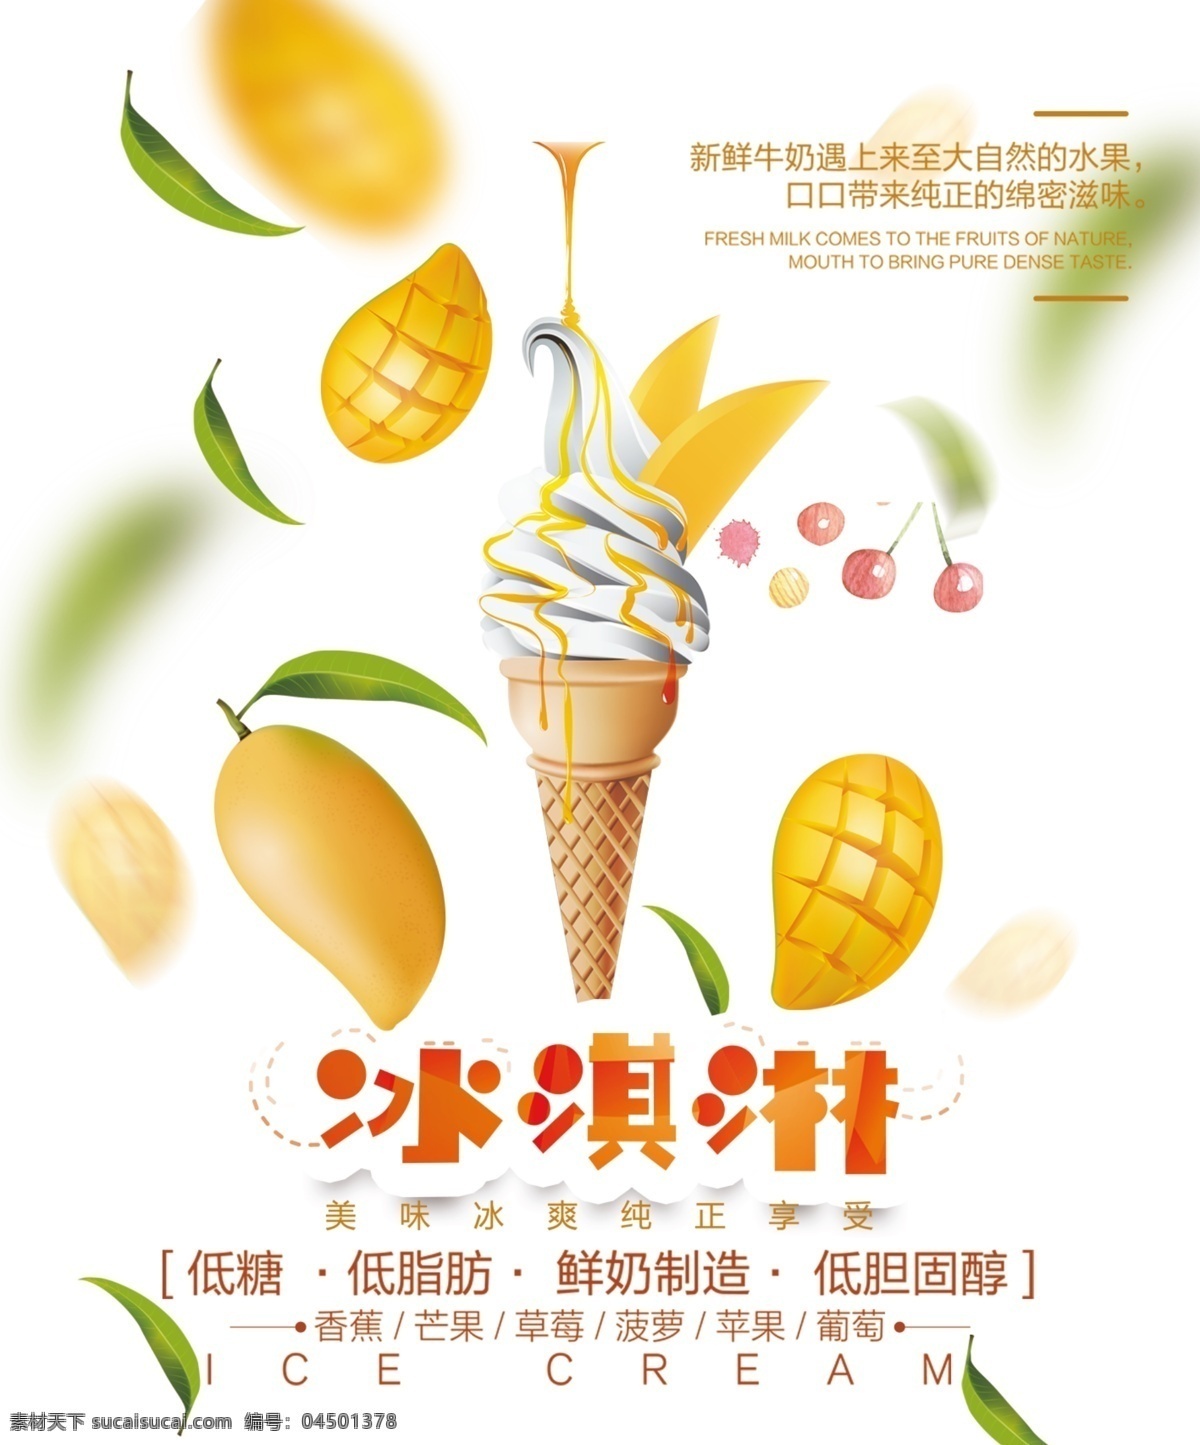 健康 冰淇淋 冰激凌 甜品 冷饮广告 海报 psd分层 甜筒 夏季 奶茶 巧克力 宣传